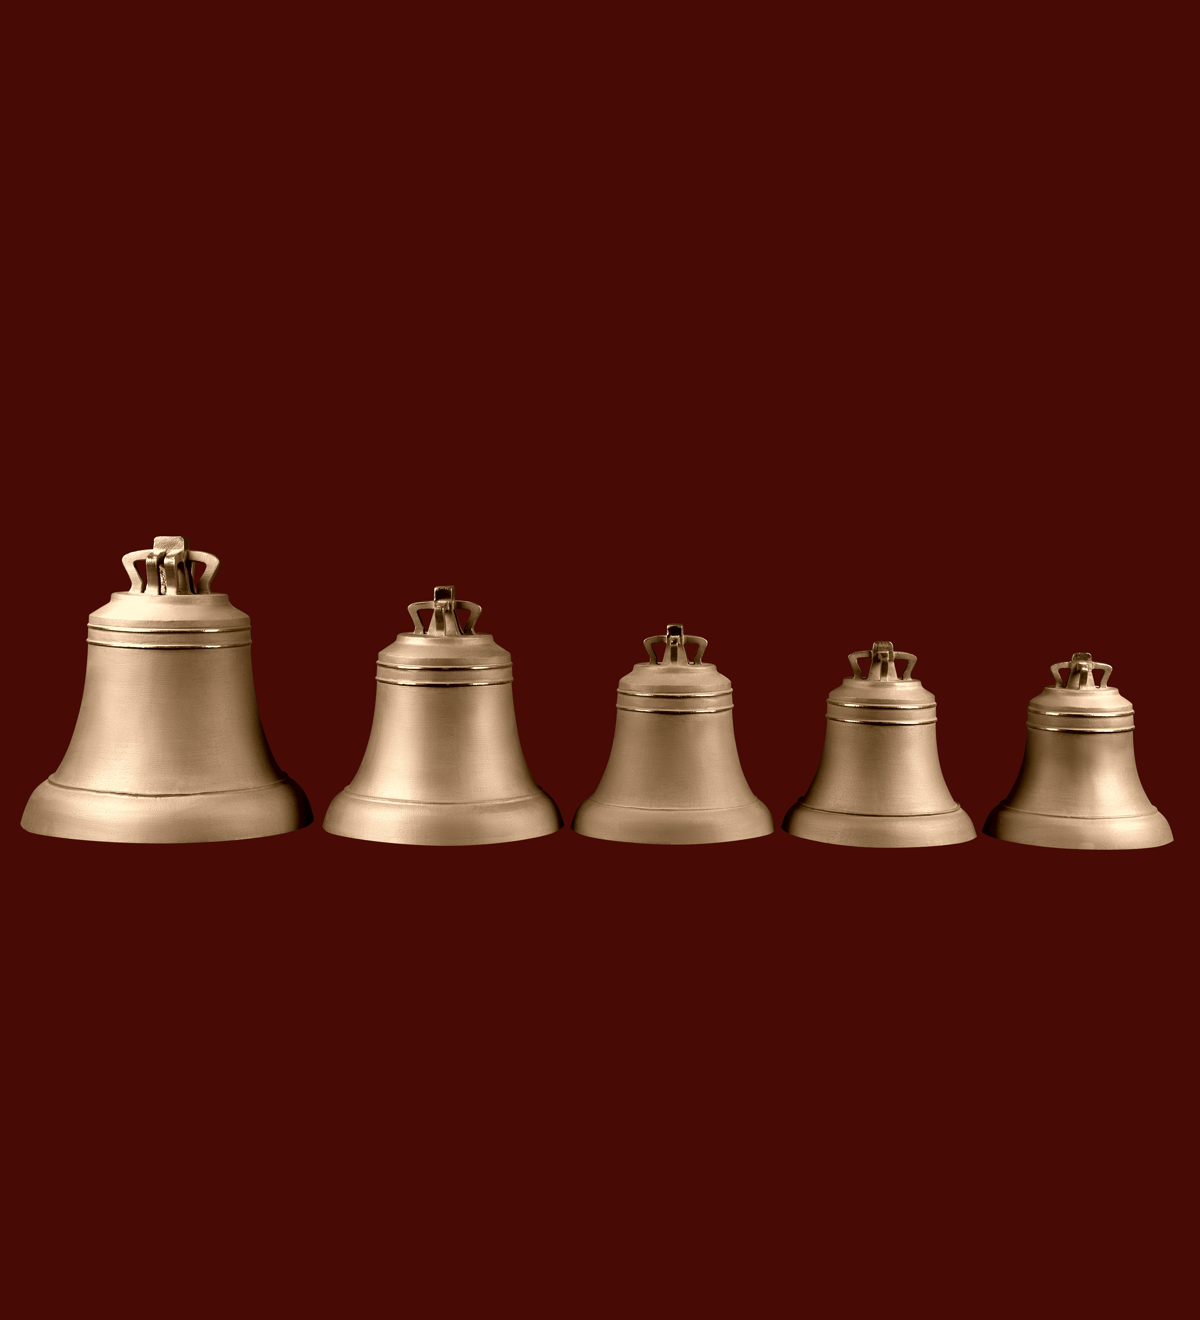 фото Набор №3 из 5-ти "Монастырских" колоколов весом 14,8,6,5,4 кг в каталоге завода Литэкс